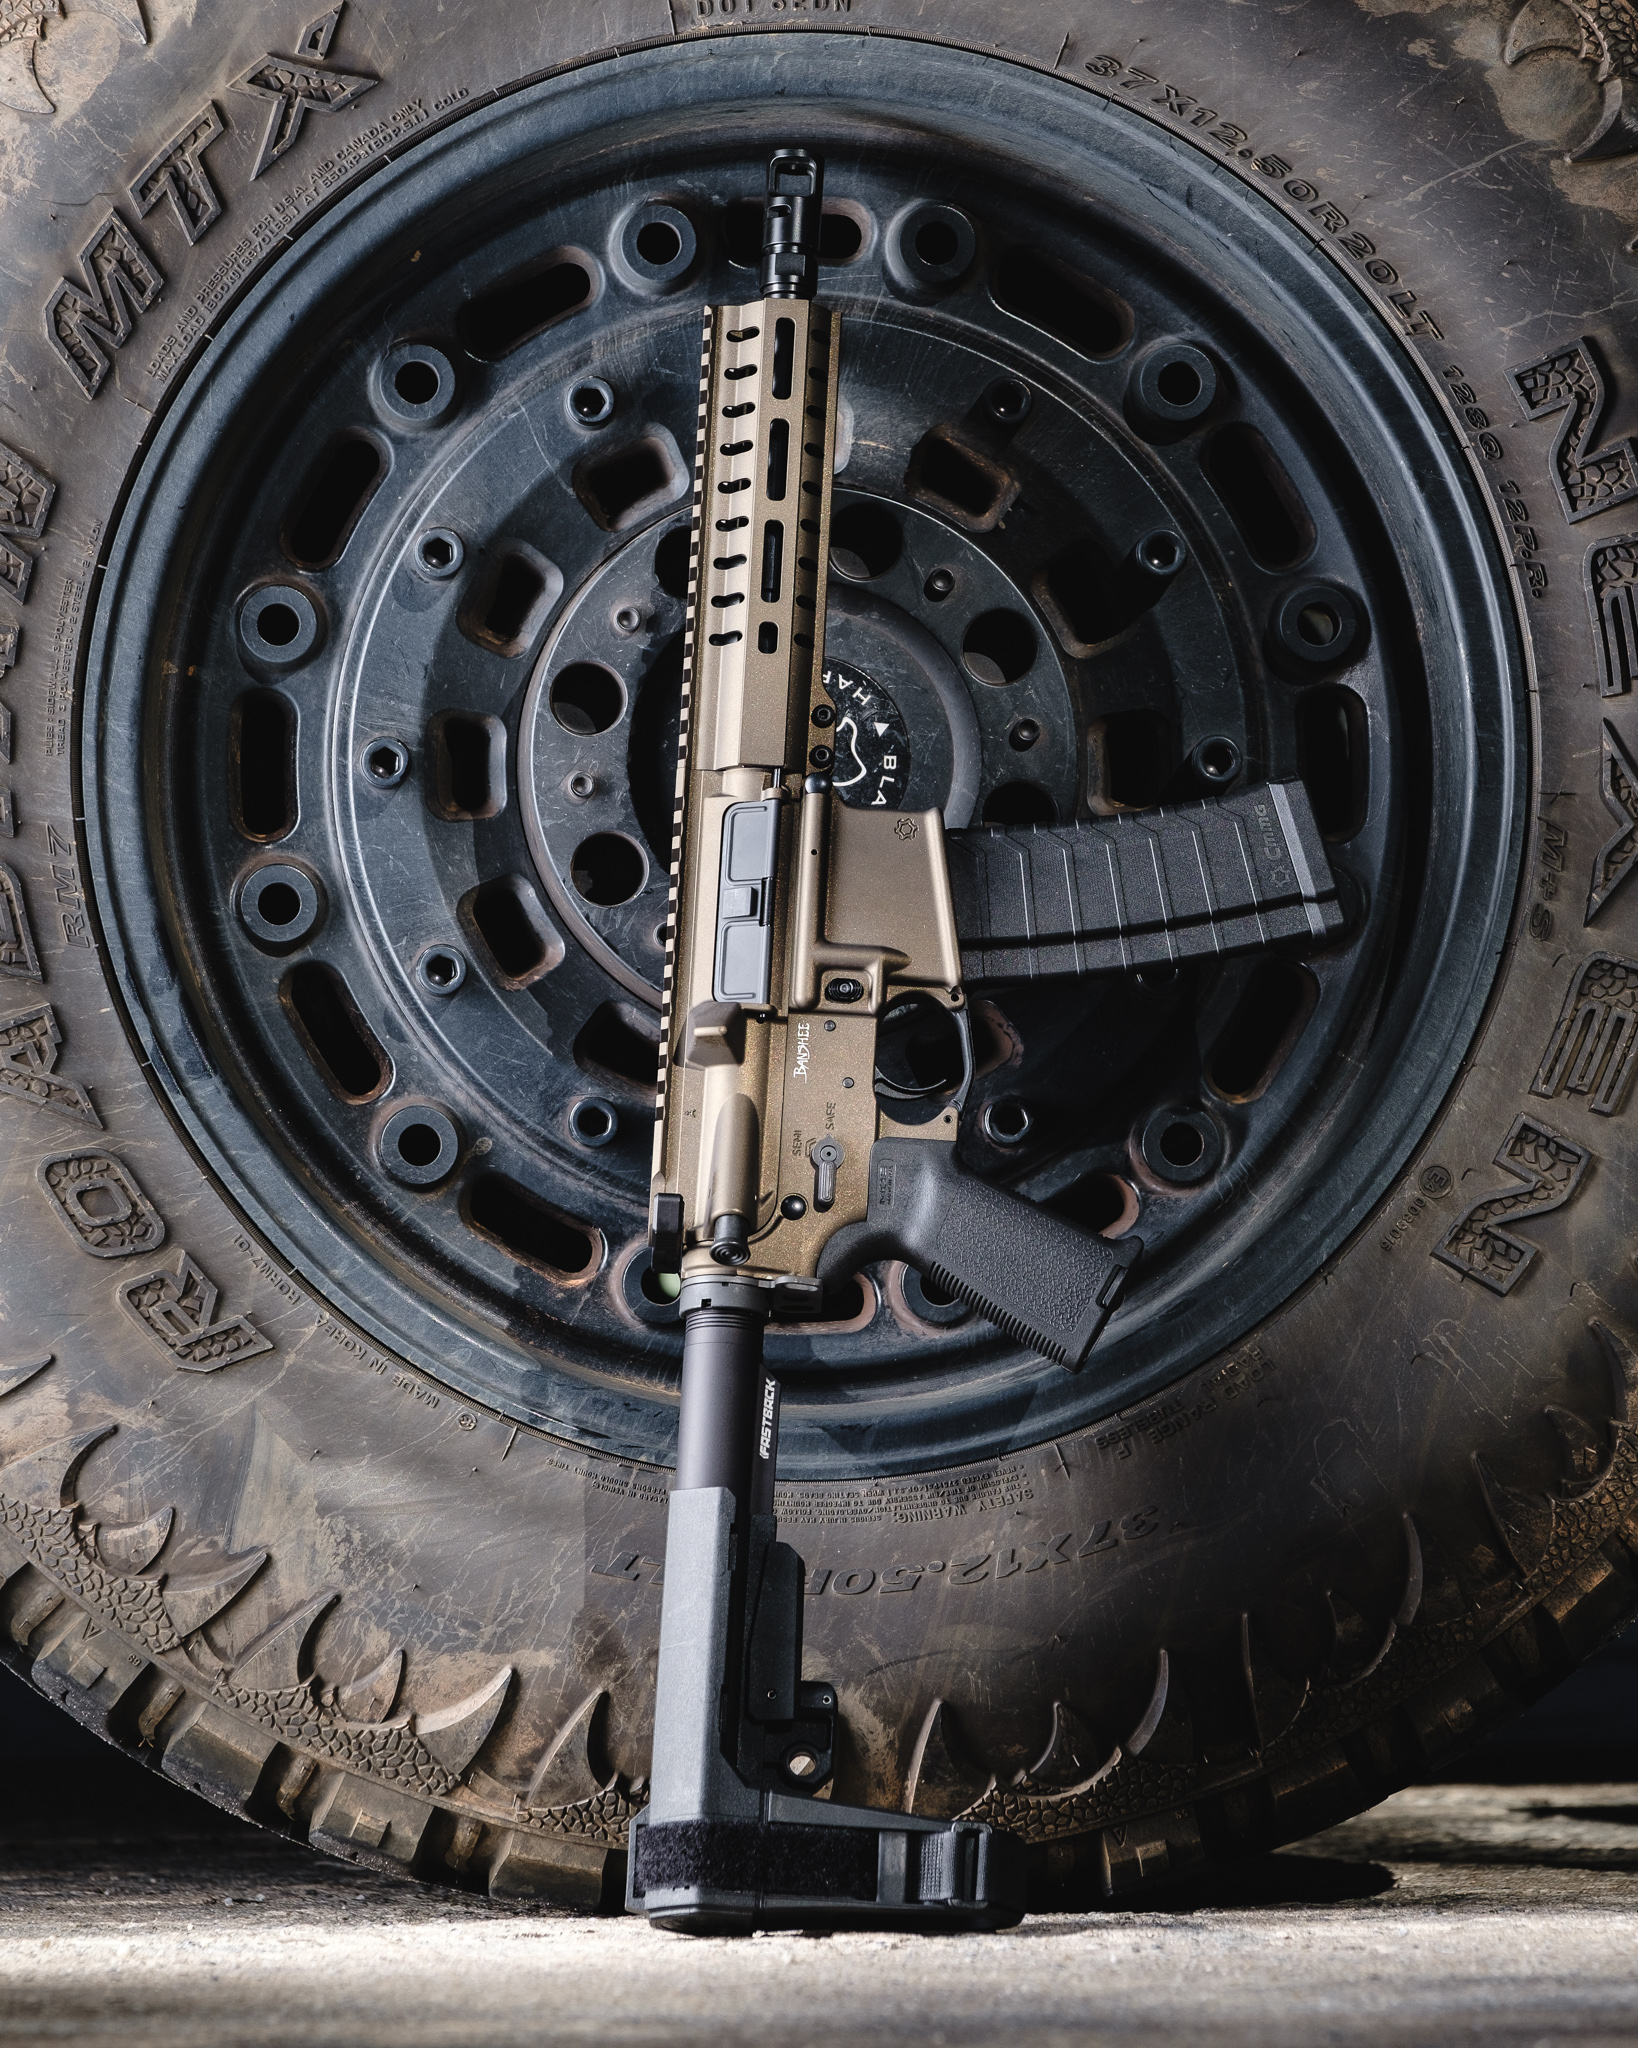 CMMG Banshee 300 Mk4, 4.6x30mm, FourSix AR Pistol, Midnight Bronze (46A96B4-MB)